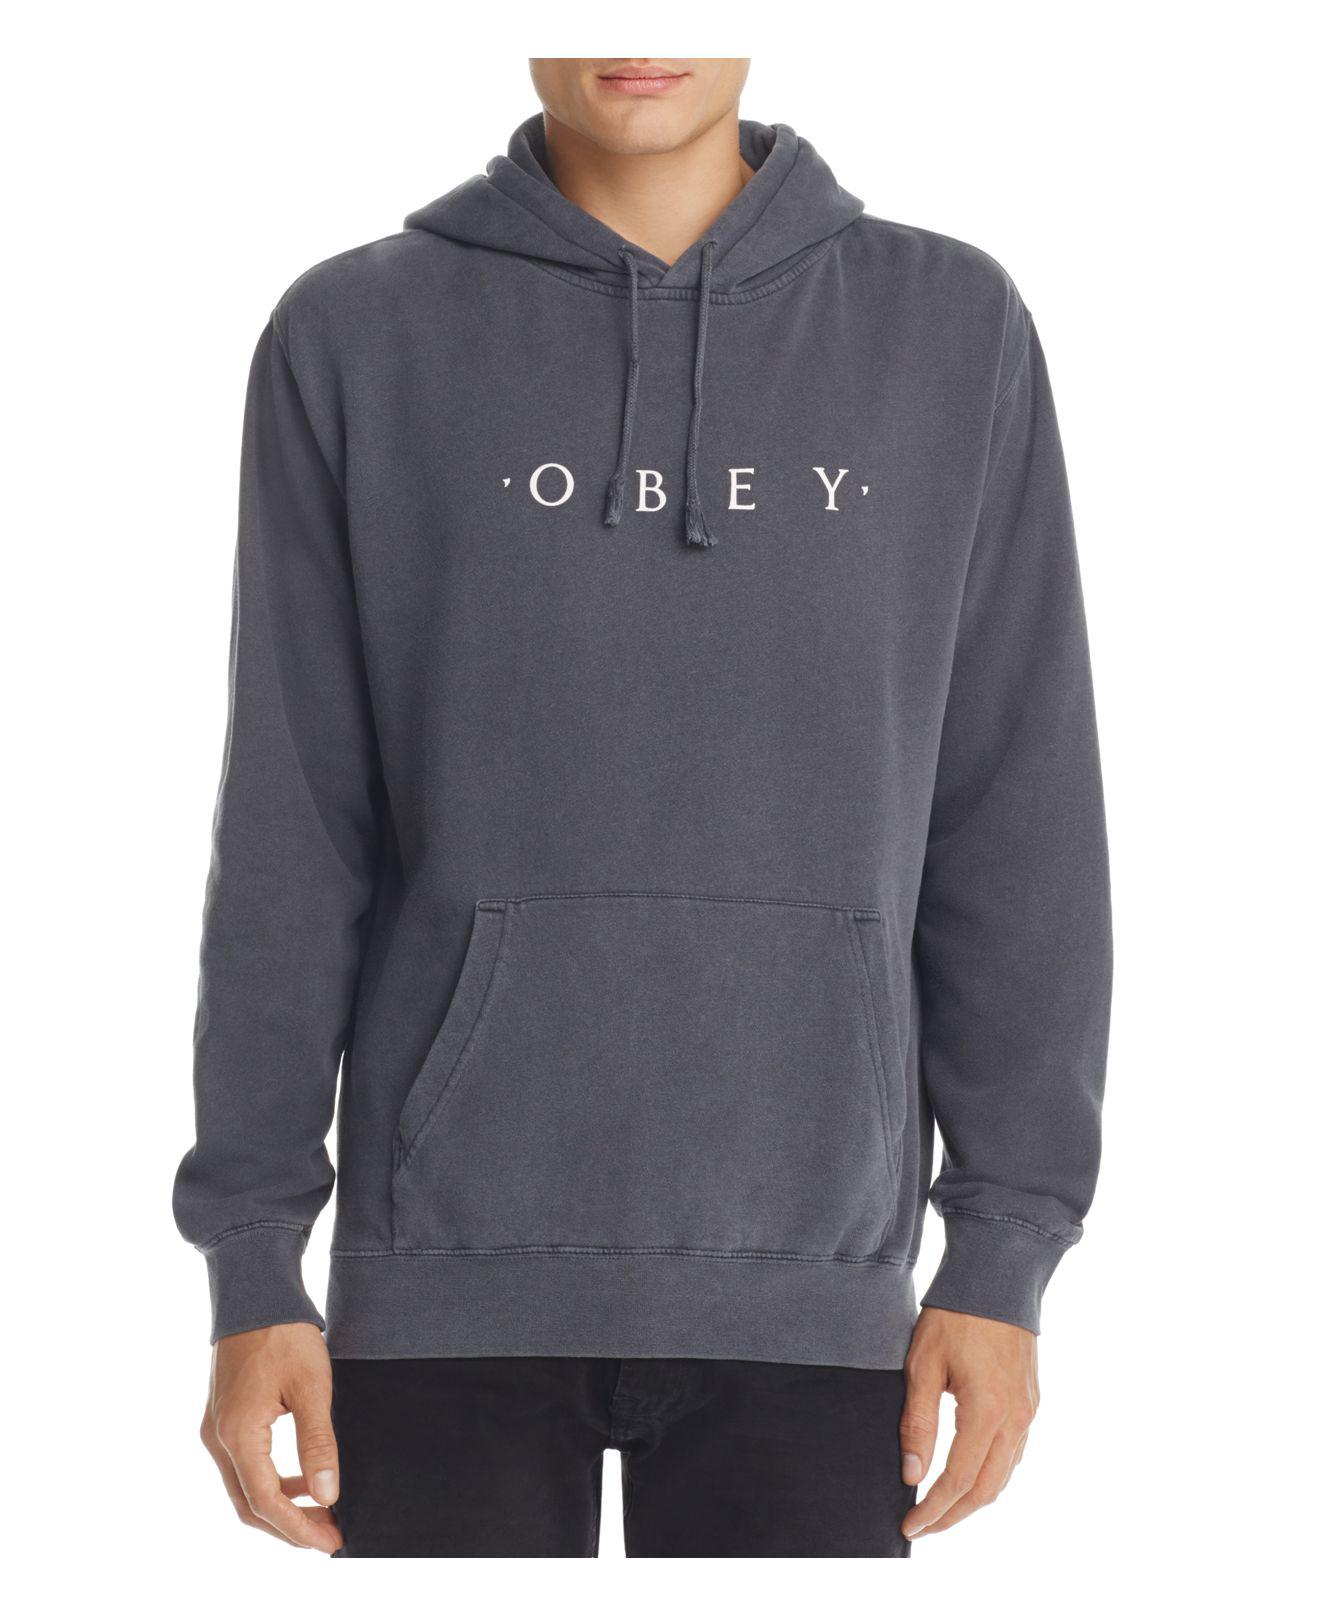 Lyst - Obey Novel Hooded Sweatshirt in Gray for Men